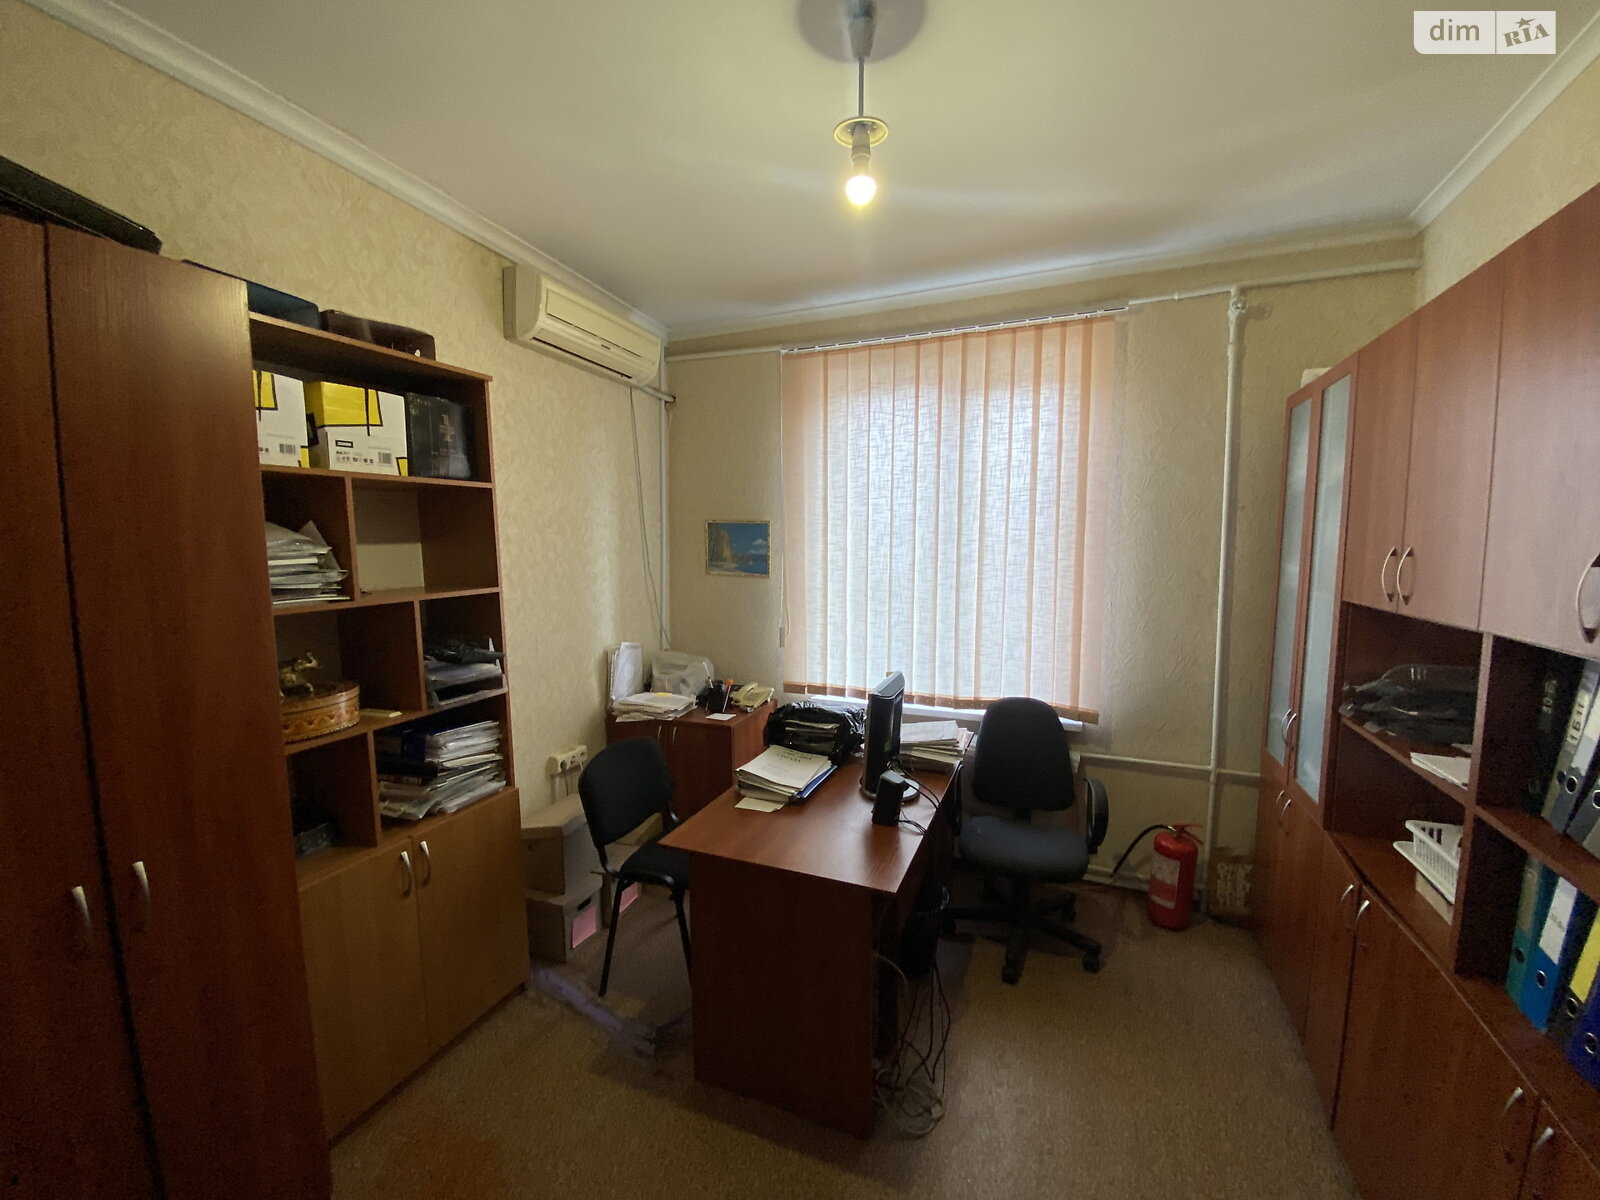 Аренда офисного помещения в Запорожье, Покровская улица 30, помещений -, этаж - 1 фото 1